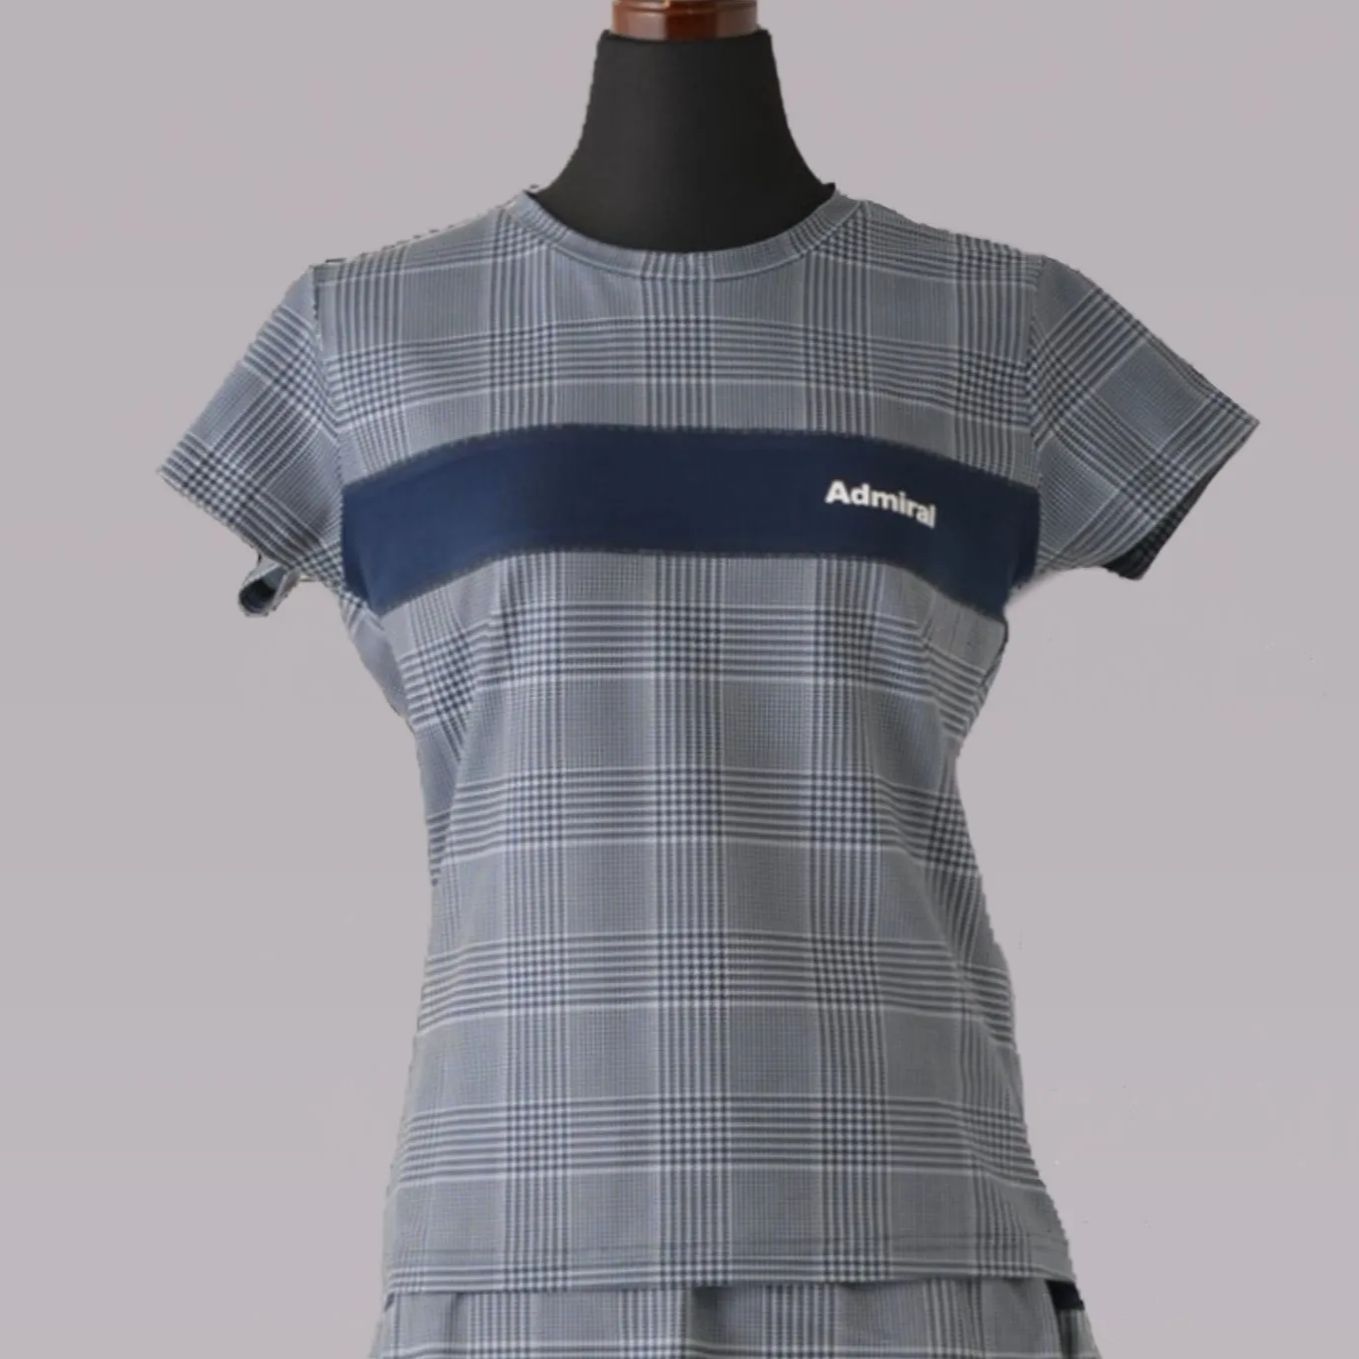 Admiral アドミラル テニス ウェア シャツ Mサイズ 新品未使用 グレー 